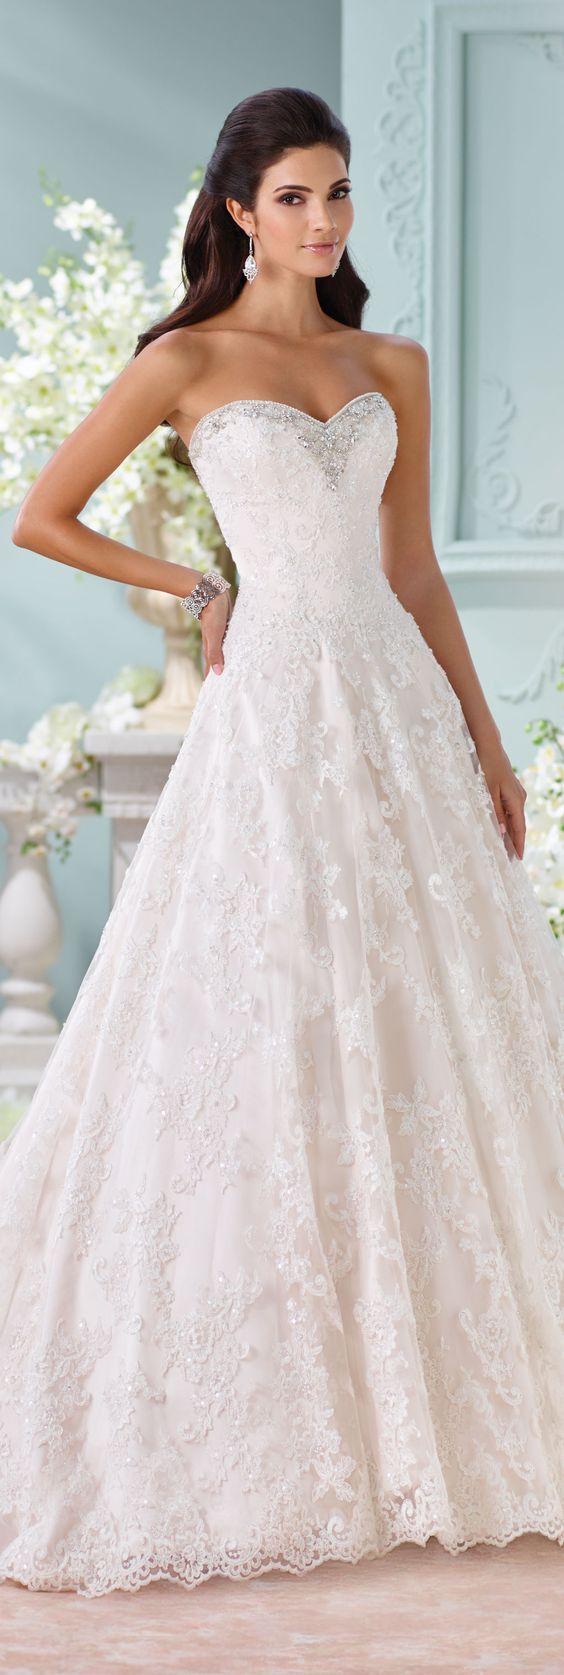 زفاف - Alencon Lace Wedding Dress